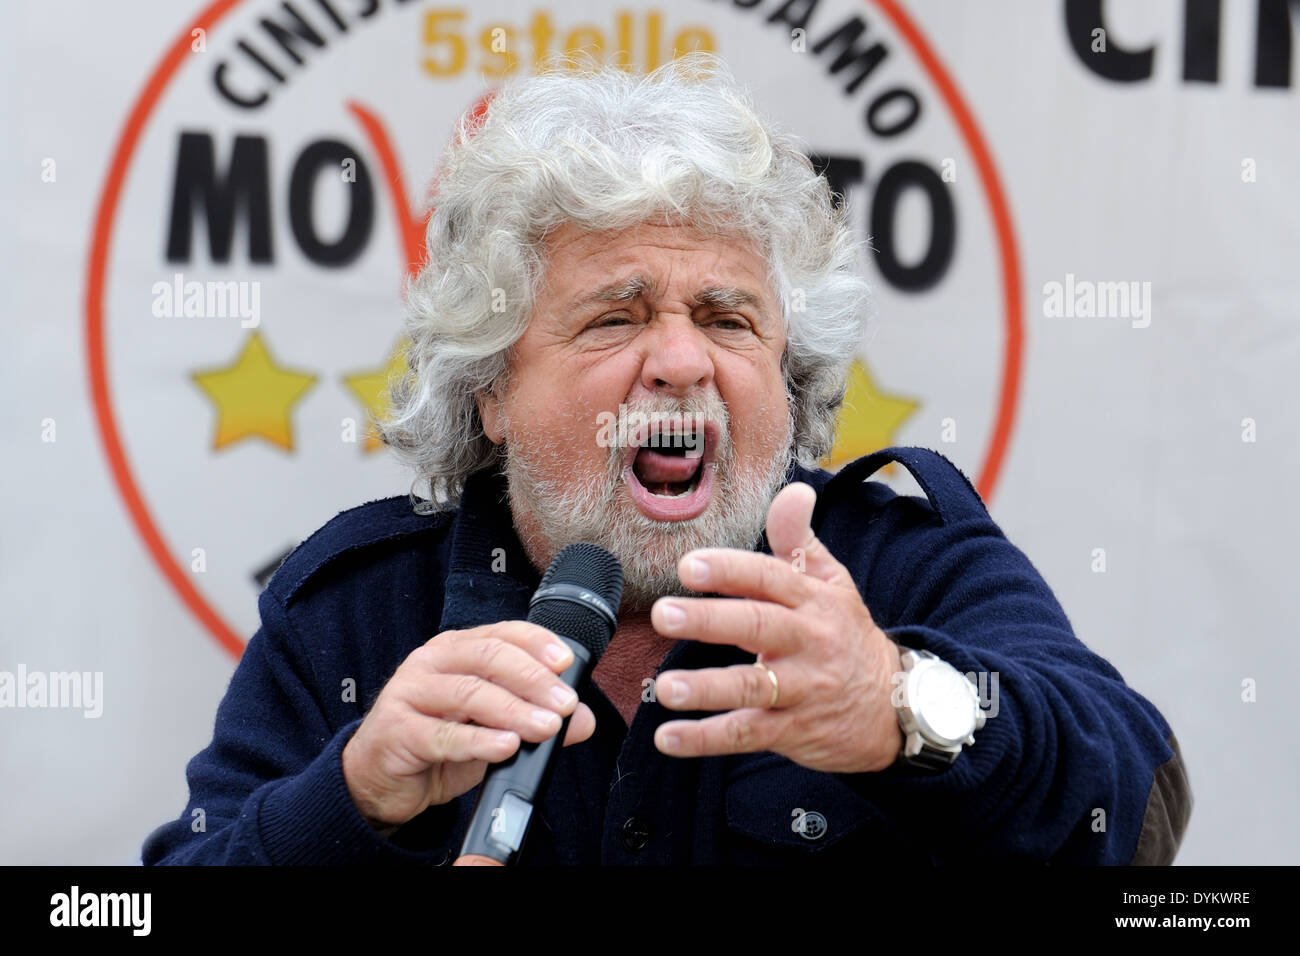 Beppe Grillo lors d'une réunion politique dans un carré (mouvement cinq étoiles), en colère close-up avec la main gauche. Banque D'Images